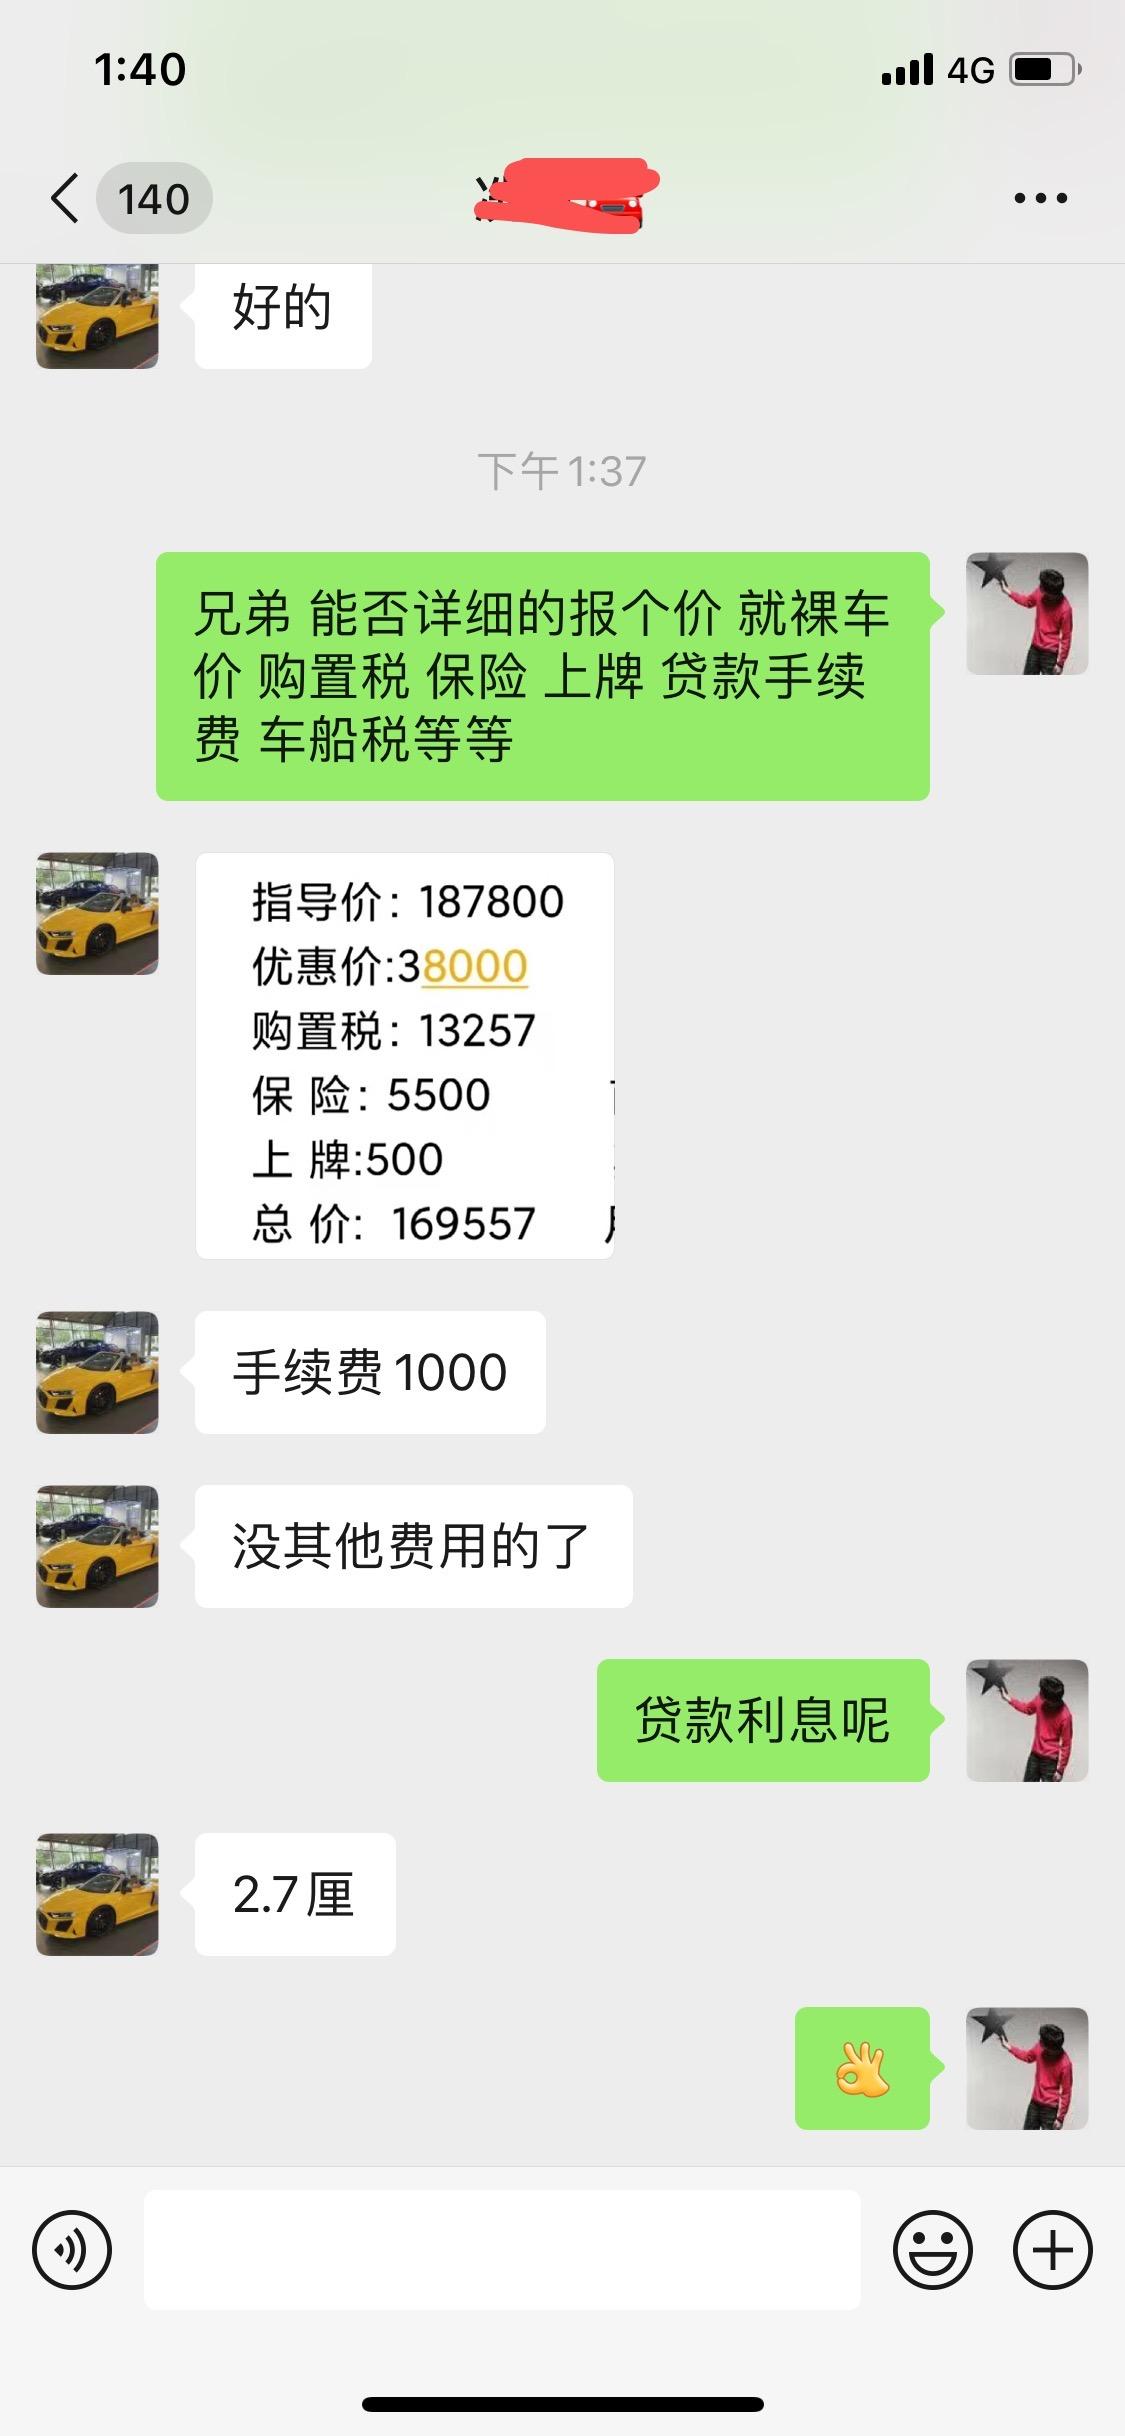 日产天籁 有在广州买车的 这价格买得到吗 有没有套路在里面